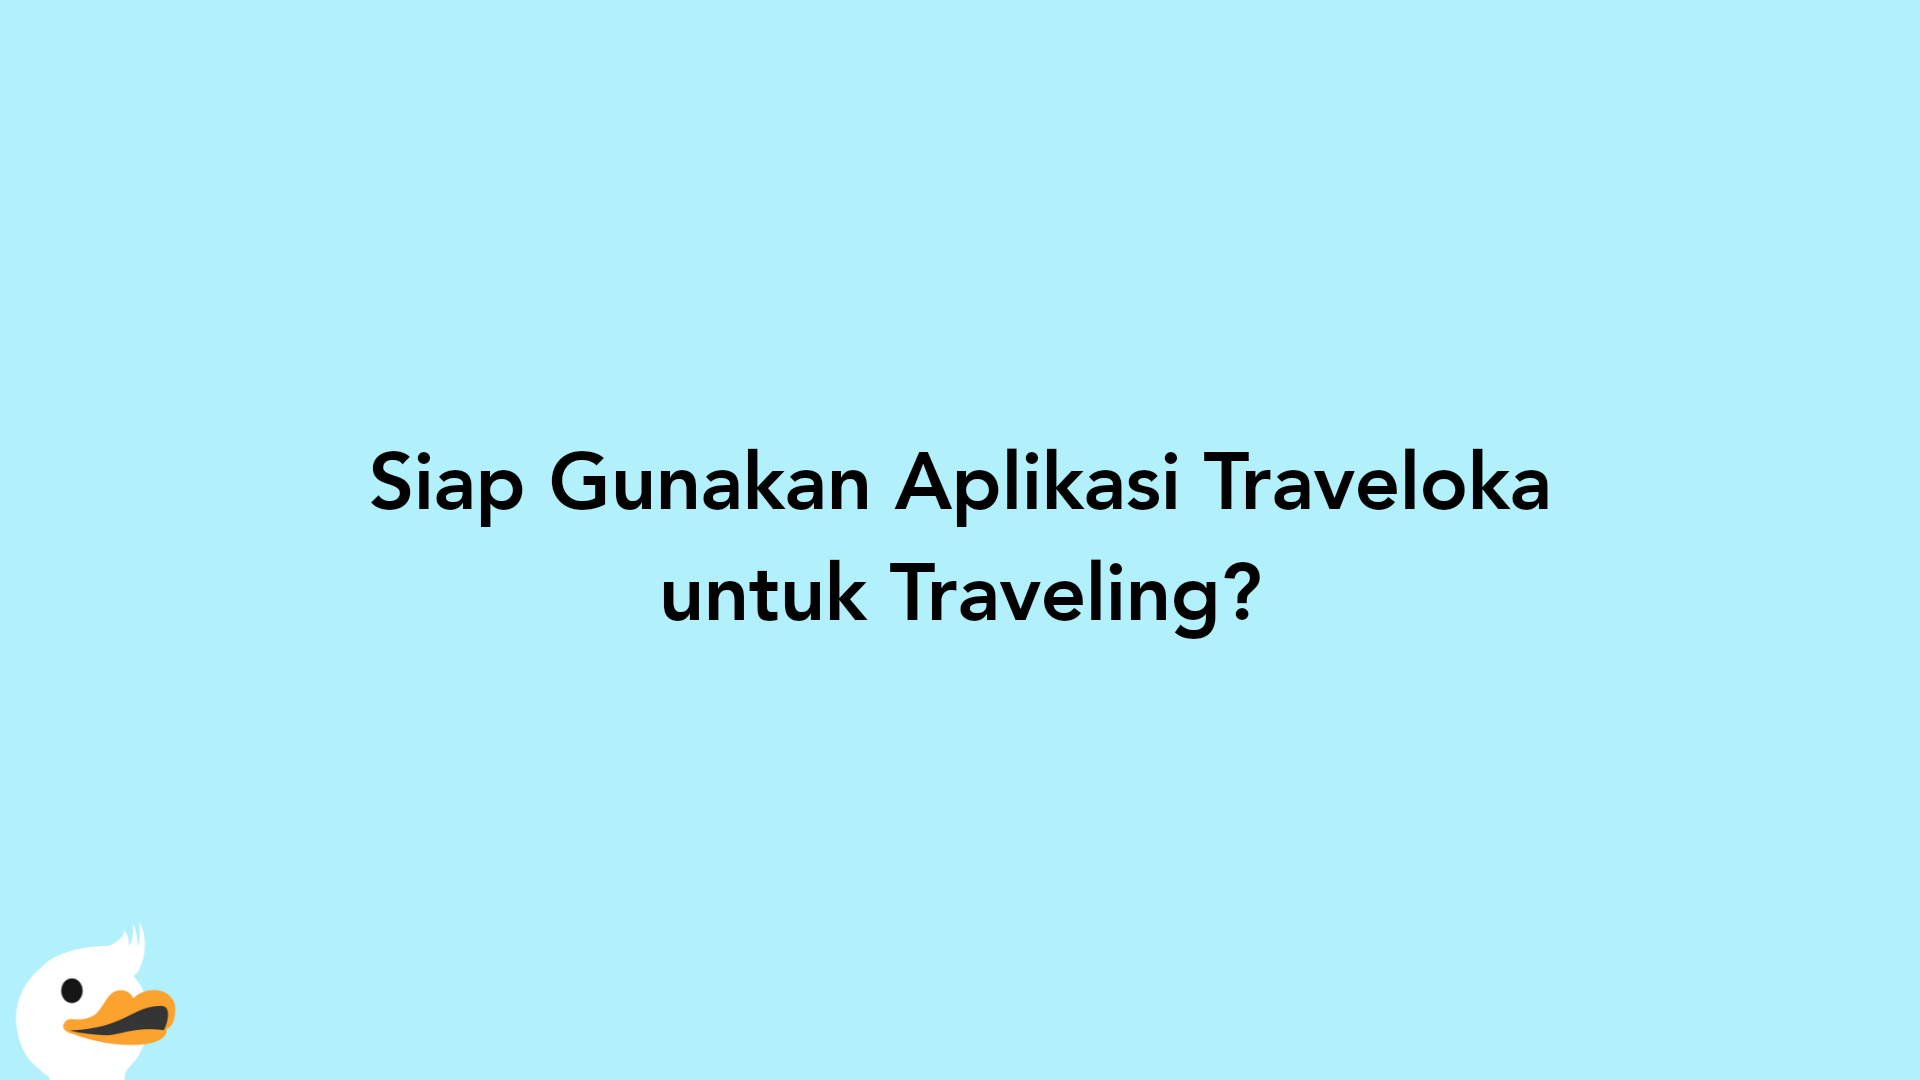 Siap Gunakan Aplikasi Traveloka untuk Traveling?